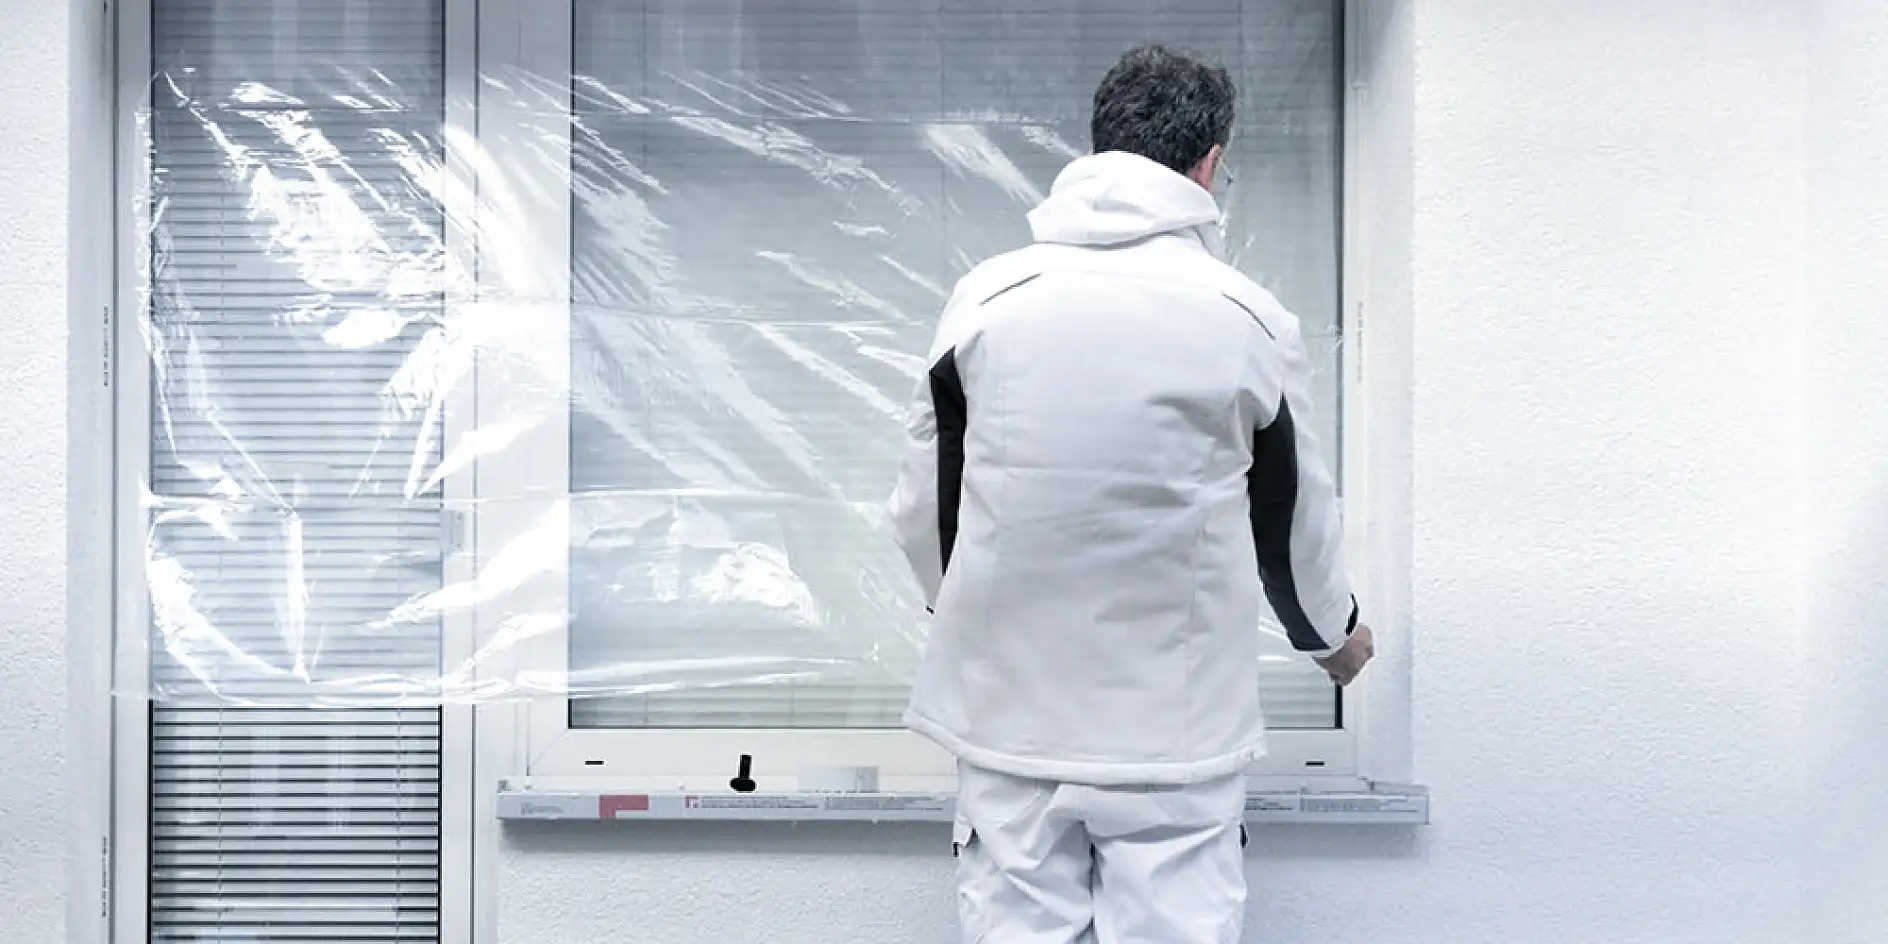 tesa® Zanaatkârlar profesyonel maskeleme ürünleriyle pencerelerin korunması